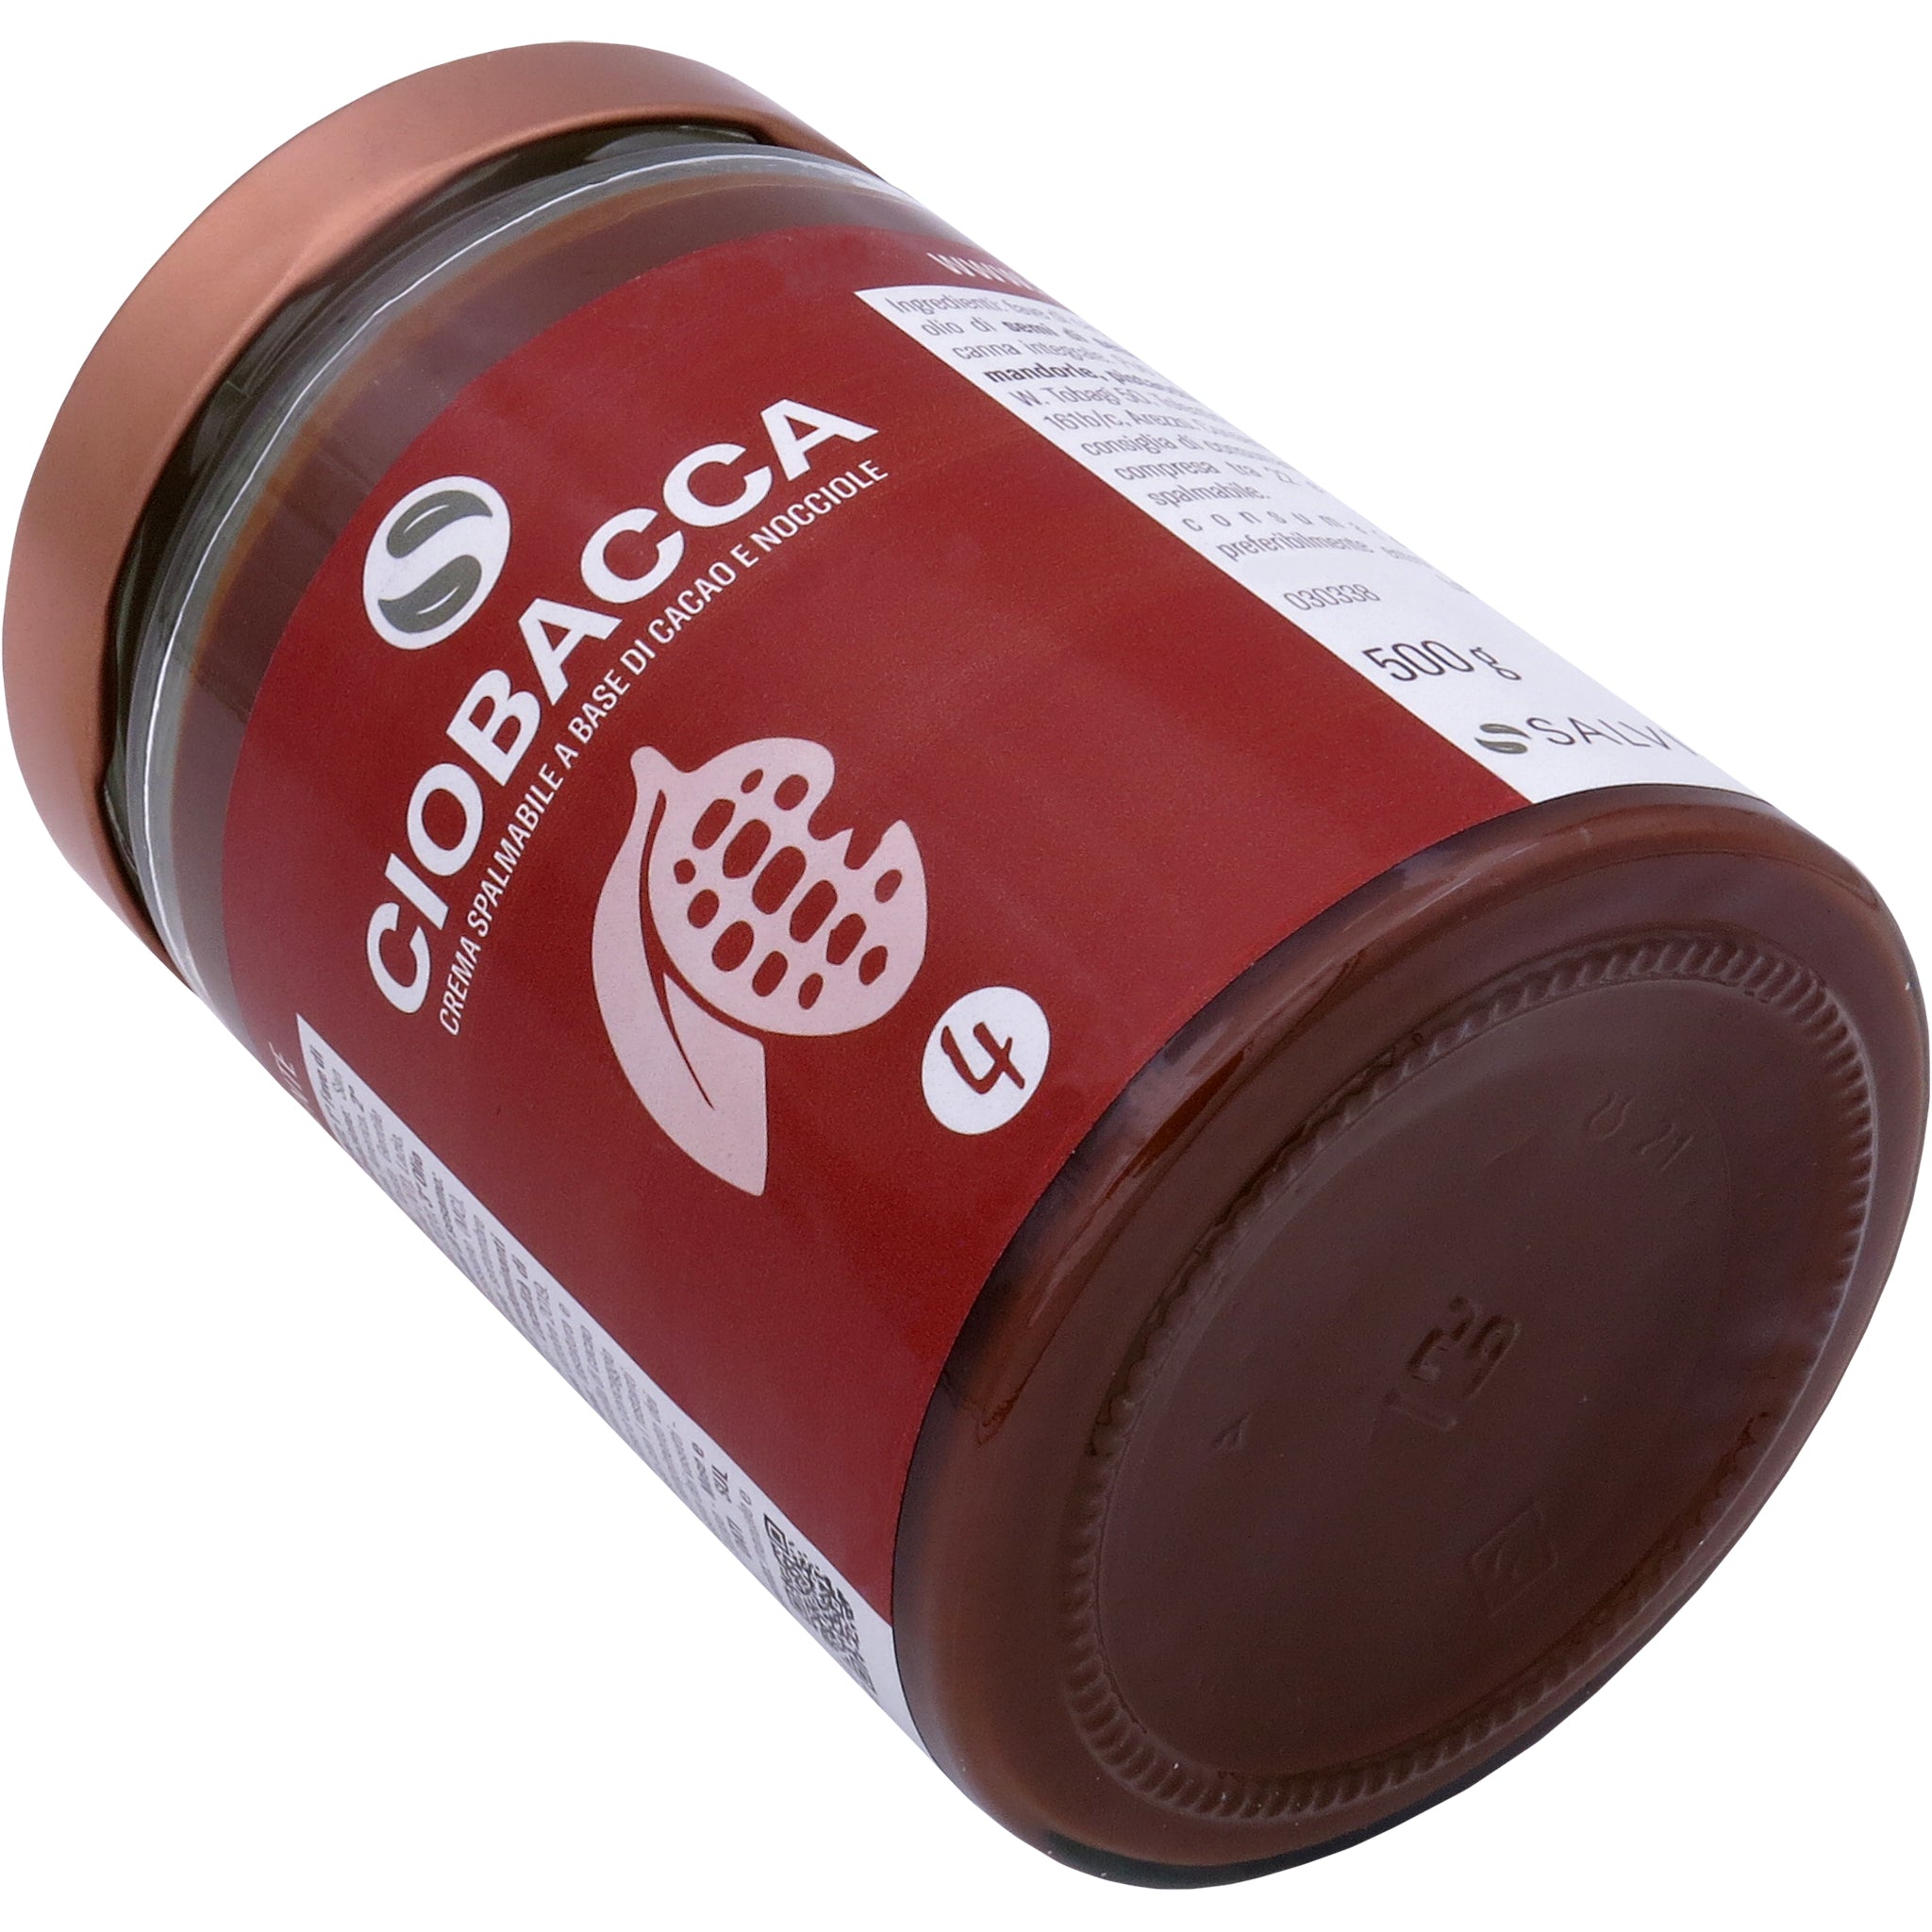 Ciobacca - Crema spalmabile a base di cacao e nocciole